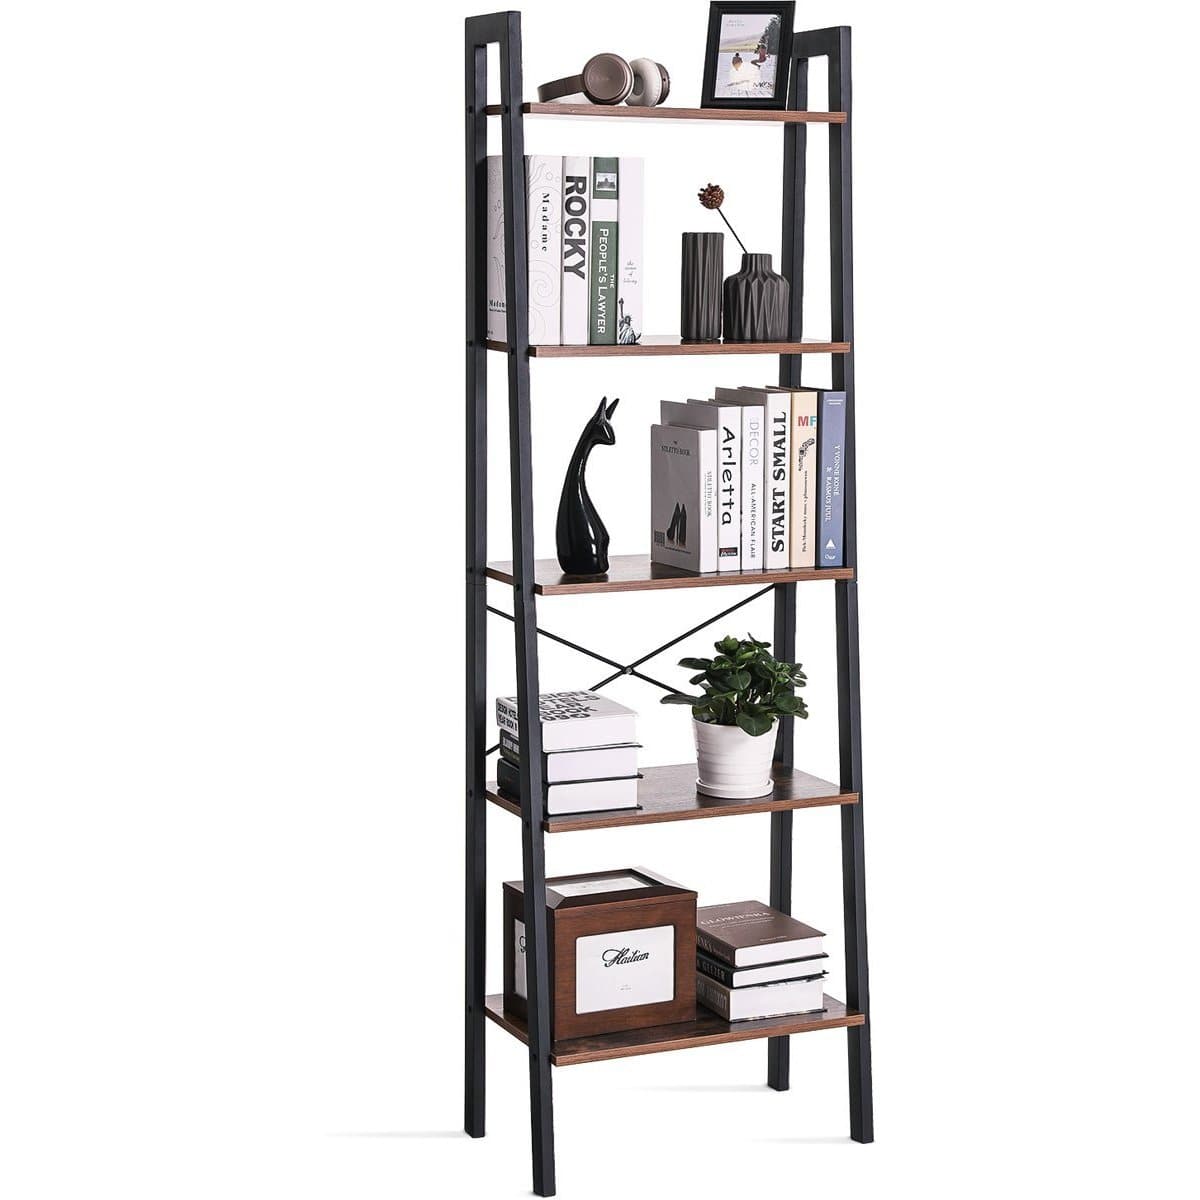 Nancy's Boekenkast Industrieel - Boekenstandaard - Ladderkast 5 Laags 56 x 34 x 172 cm - Nancy HomeStore